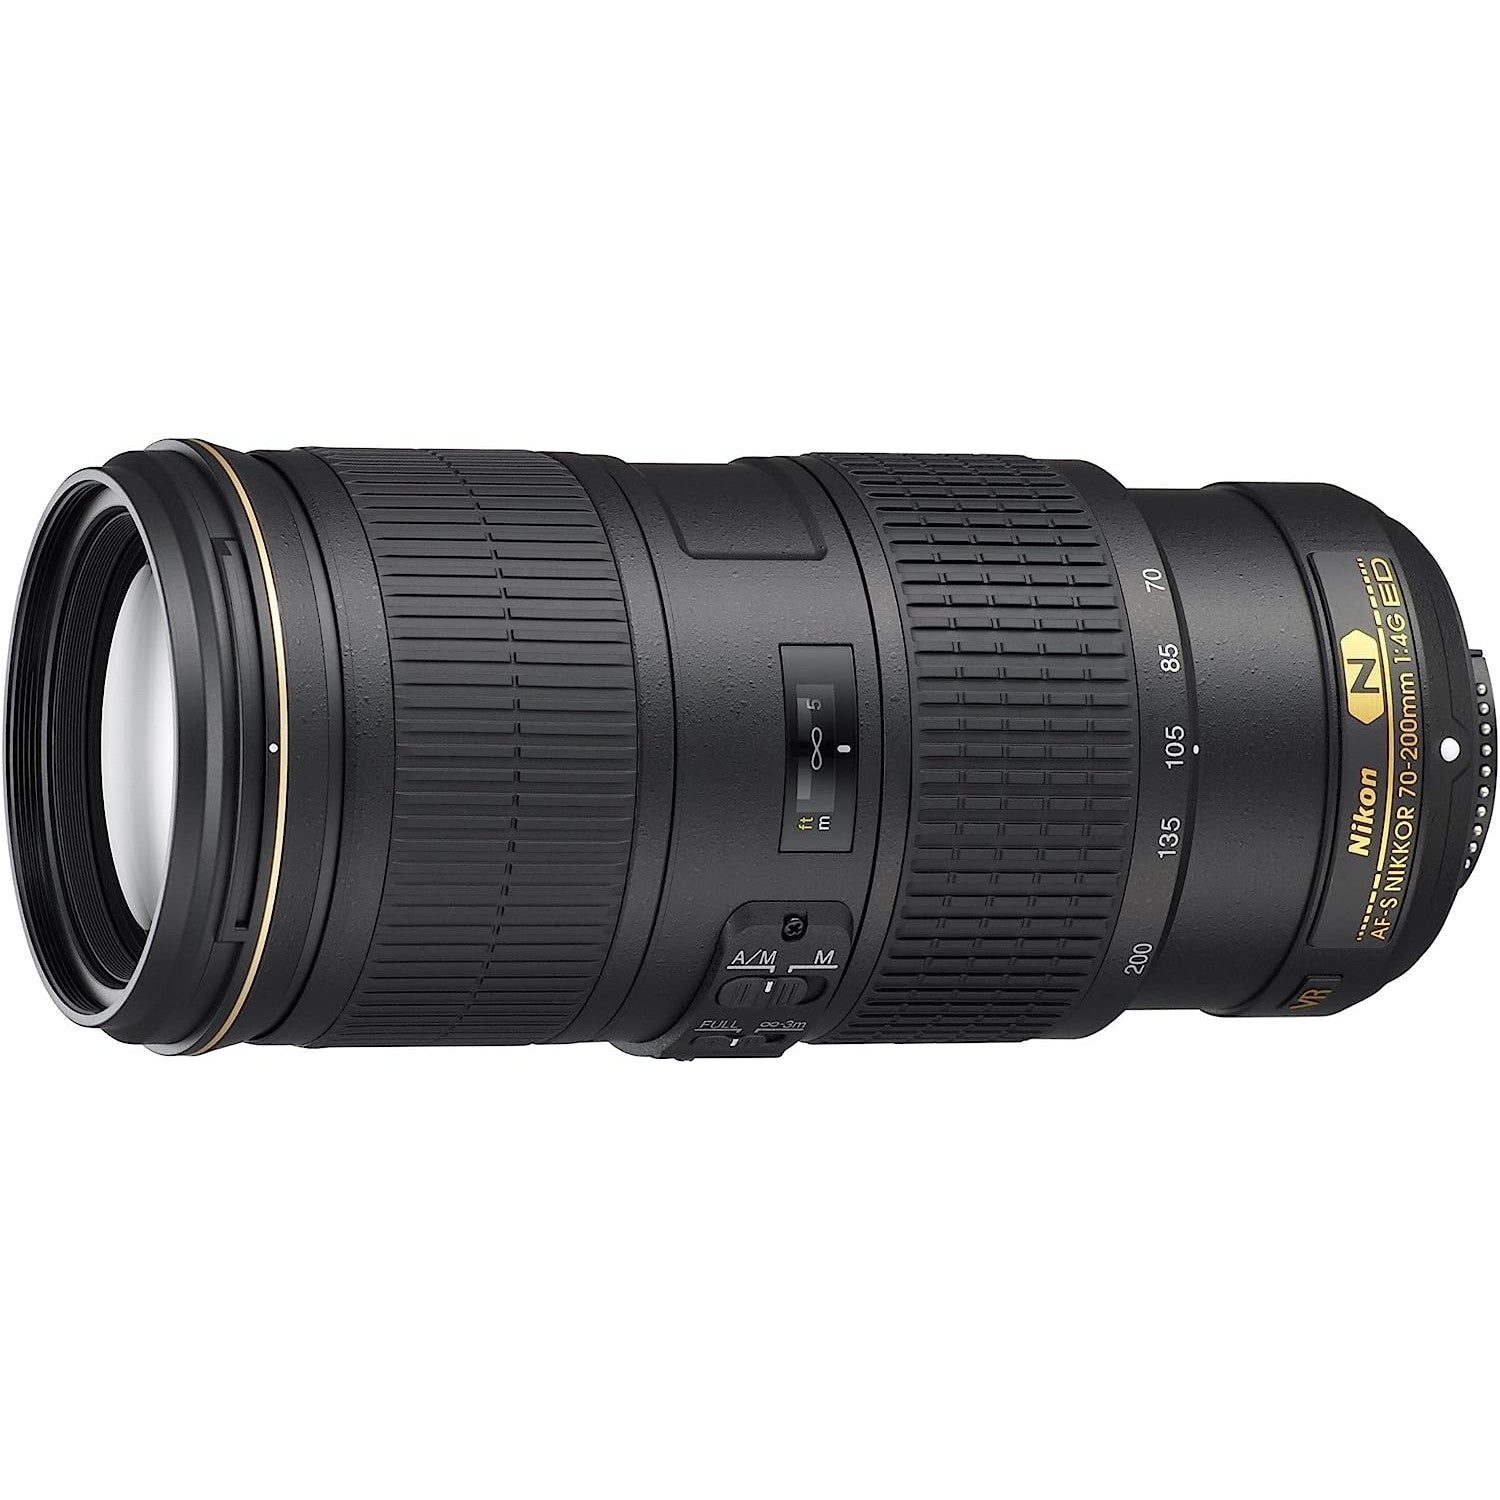 Nikon AF-S 70-200mm f/4G ED VR Lens - Refurbished Pristine